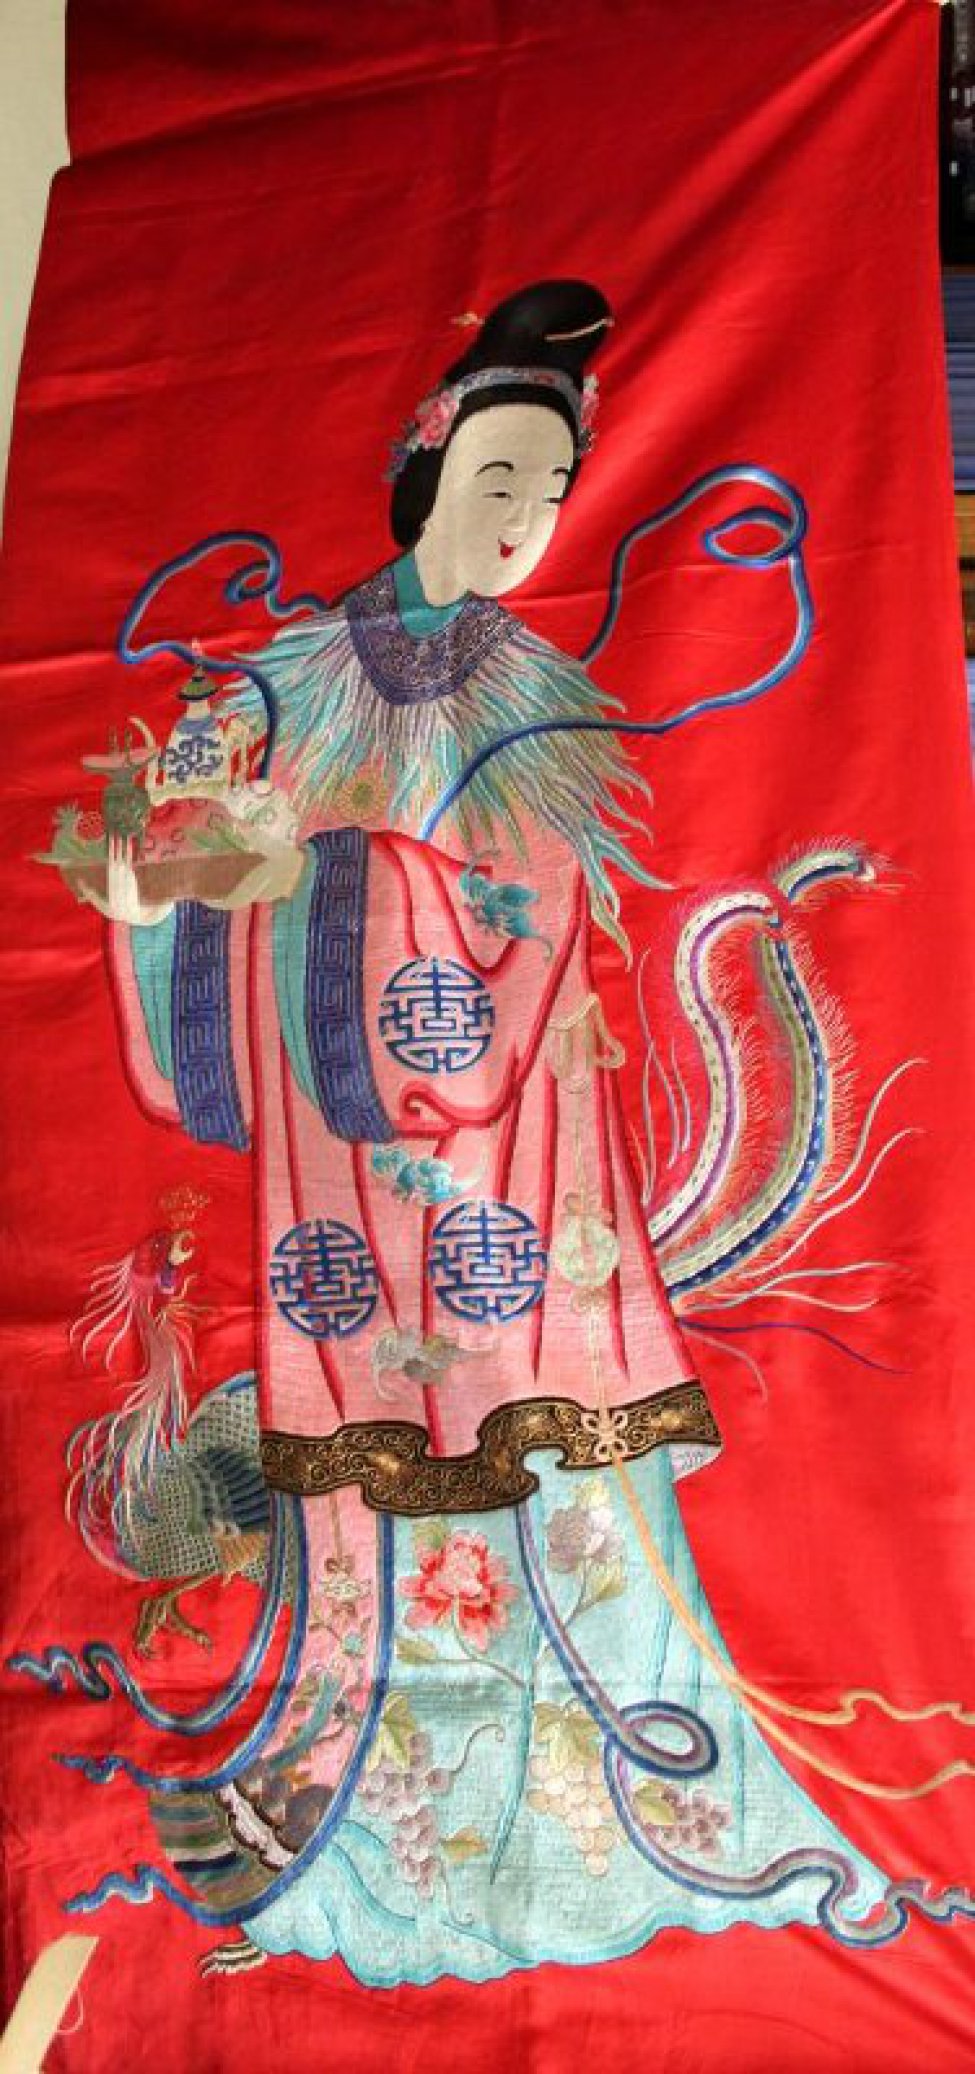 Вертикальной прямоугольной формы из красного атласа с вышитой разноцветными шелками фигурой женского божества. Изображена женщина с высокой прической темно-коричневых волос, украшенной сине-голубой диадемой с цветком по бокам. В верхней части прически - золотая булавка. В руках ее - влево - поднос с тремя фруктами (два персика и гранат), белым чайником с  синим орнаментом и зеленым сосудом на высоких ножках. Верхнее платье розового цвета с черной каймой внизу. Узор - три крупных синих иероглифа и три летучие мыши. По краю широких рукавов синяя кайма. Ворот в виде широкой синей каймы с золотым рисунком и со спускающимися вниз разноцветными перьями. Нижняя одежда голубого цвета с двумя пионами и гроздьями винограда. Внизу, за фигурой, изображена птица феникс (слева выступают ее голова, часть туловища и одна нога), справа - два длинных тонких пера. Около плеч фигуры - длинная тонкая сине-голубая лента. Слева внизу из-под платья выступает часть птичьей лапы. Детальные разработки рисунка вышивки выполнены золотными нитями.